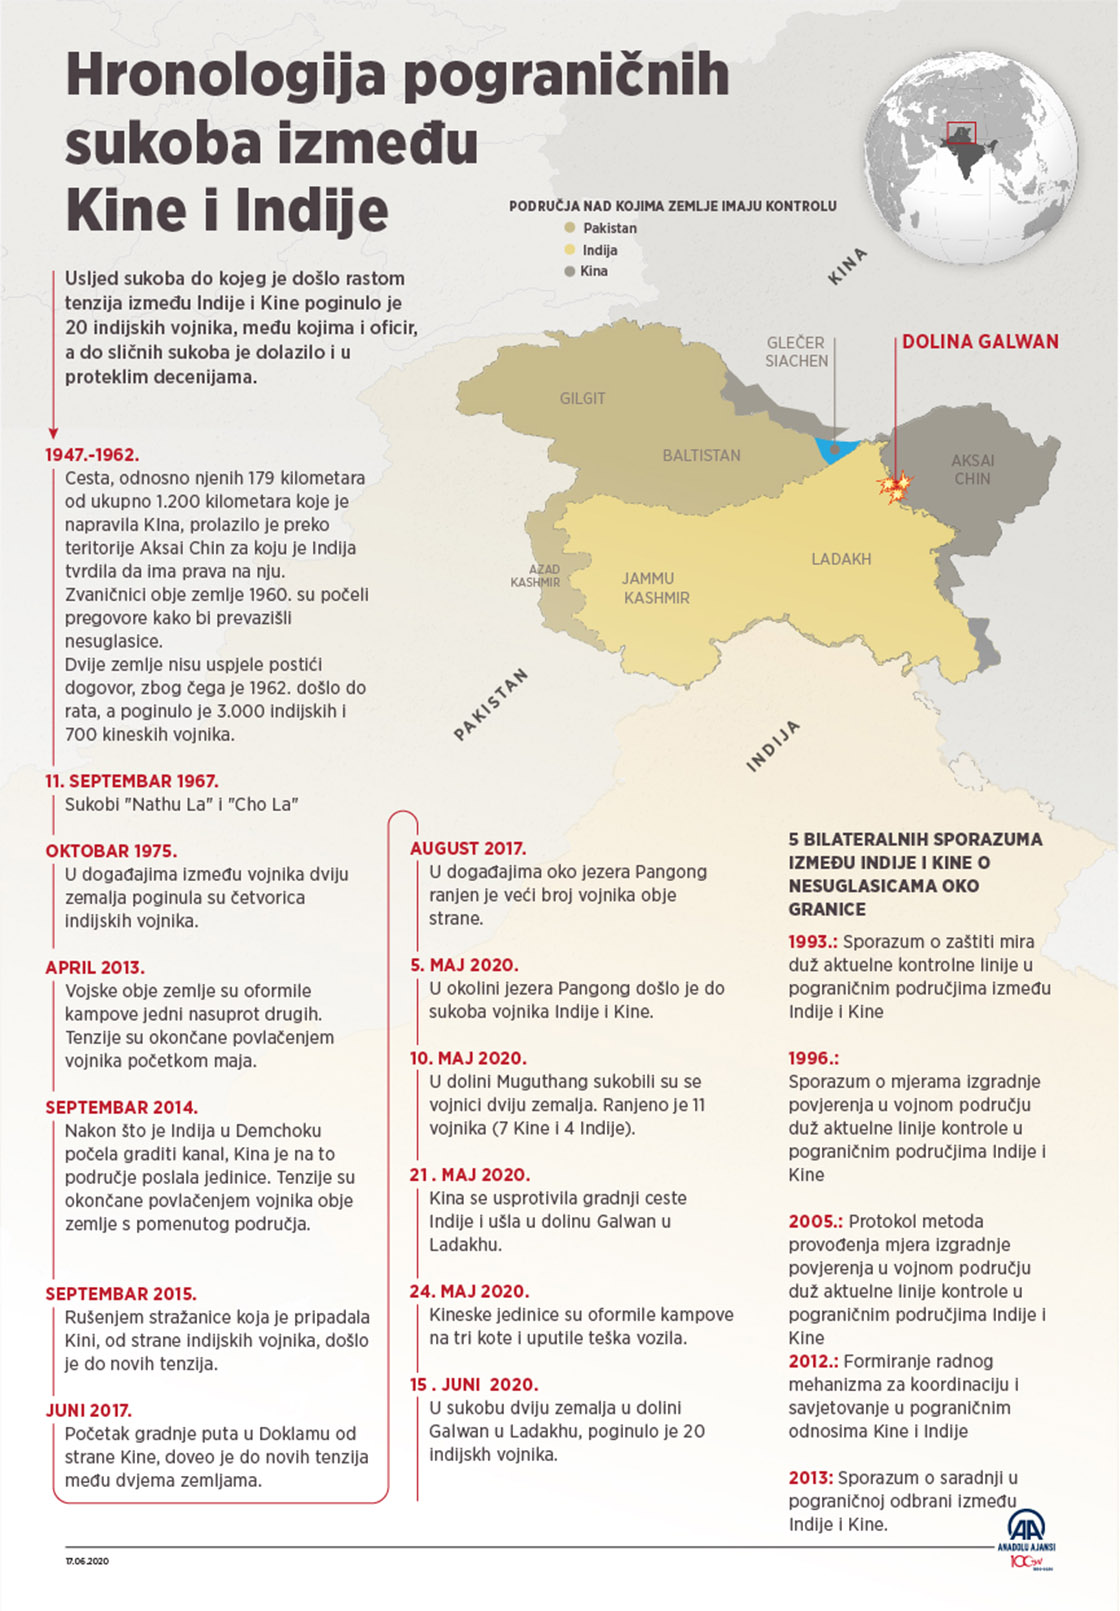 Hronološki prikaz pograničnih sukoba između Kine i Indije 